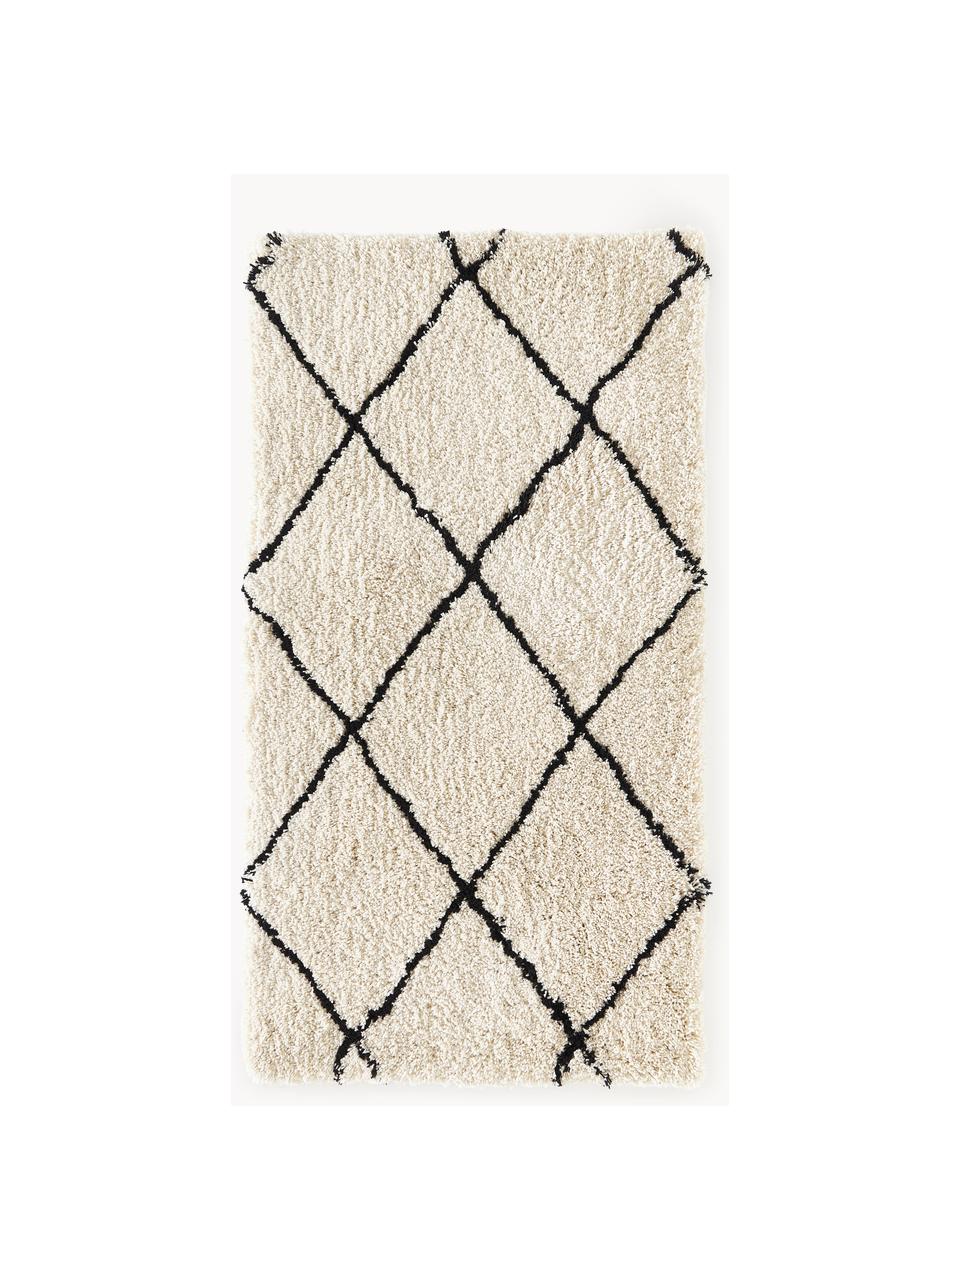 Flauschiger Hochflor-Teppich Naima, handgetuftet, 100 % Polyester, Beige, Schwarz, B 400 x L 500 cm  (Grösse XXL)